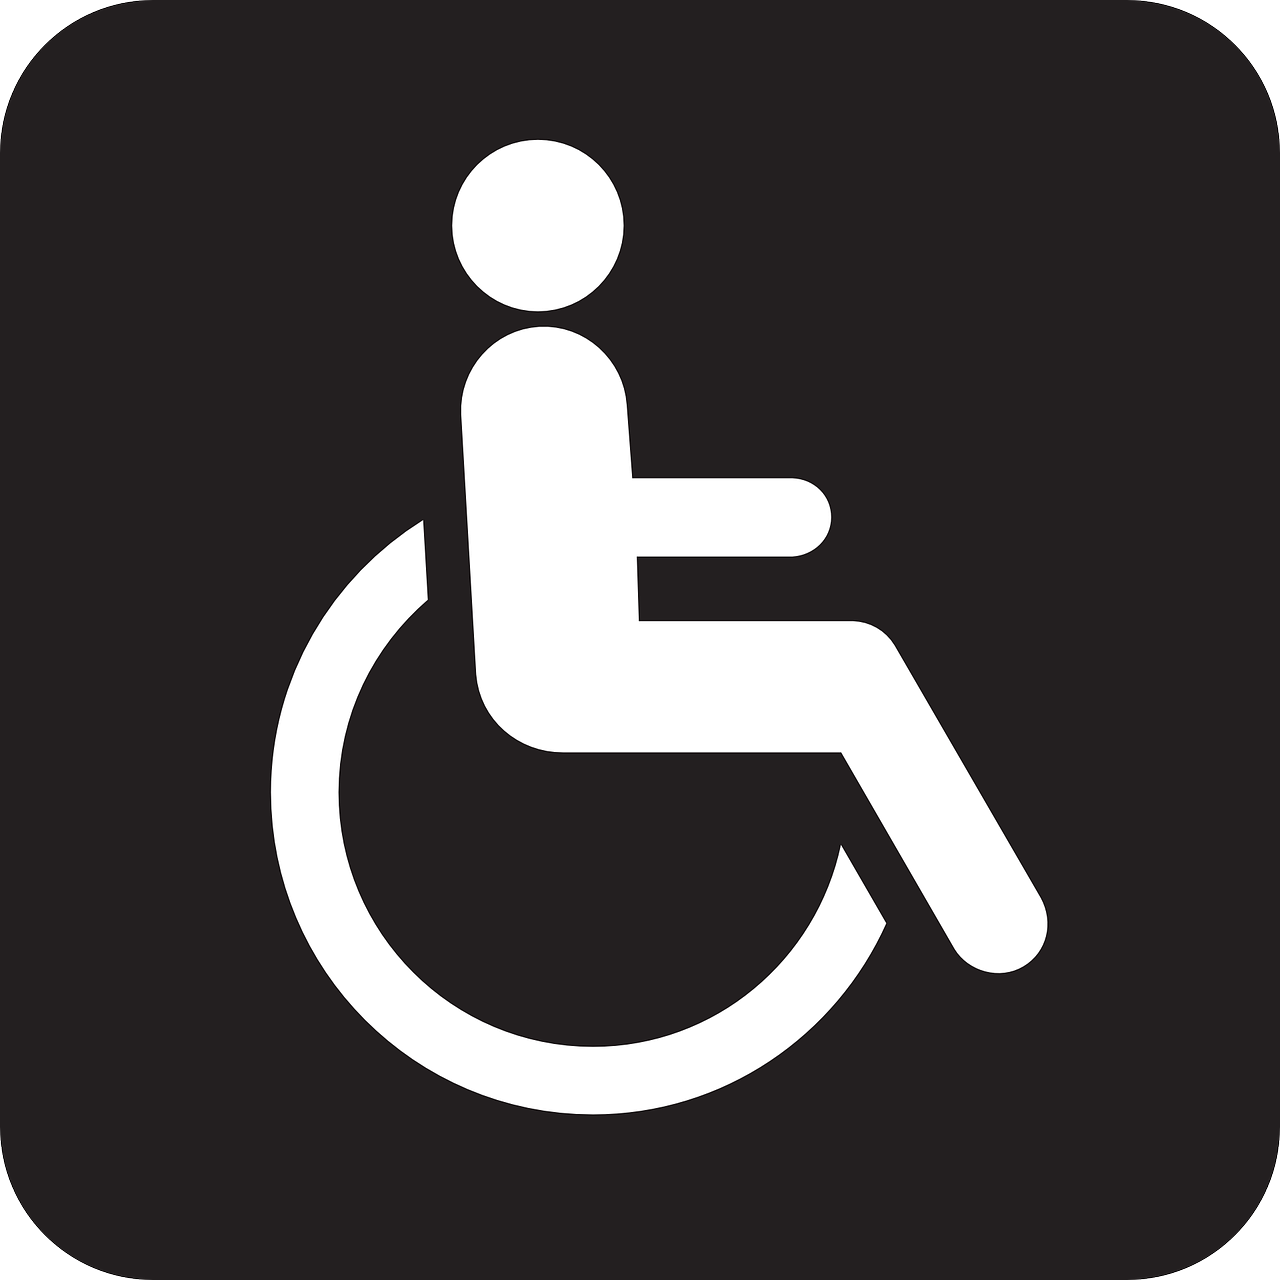 Praktijk Bejachad instelling gehandicaptenzorg verstandelijk gehandicapten ervaringen